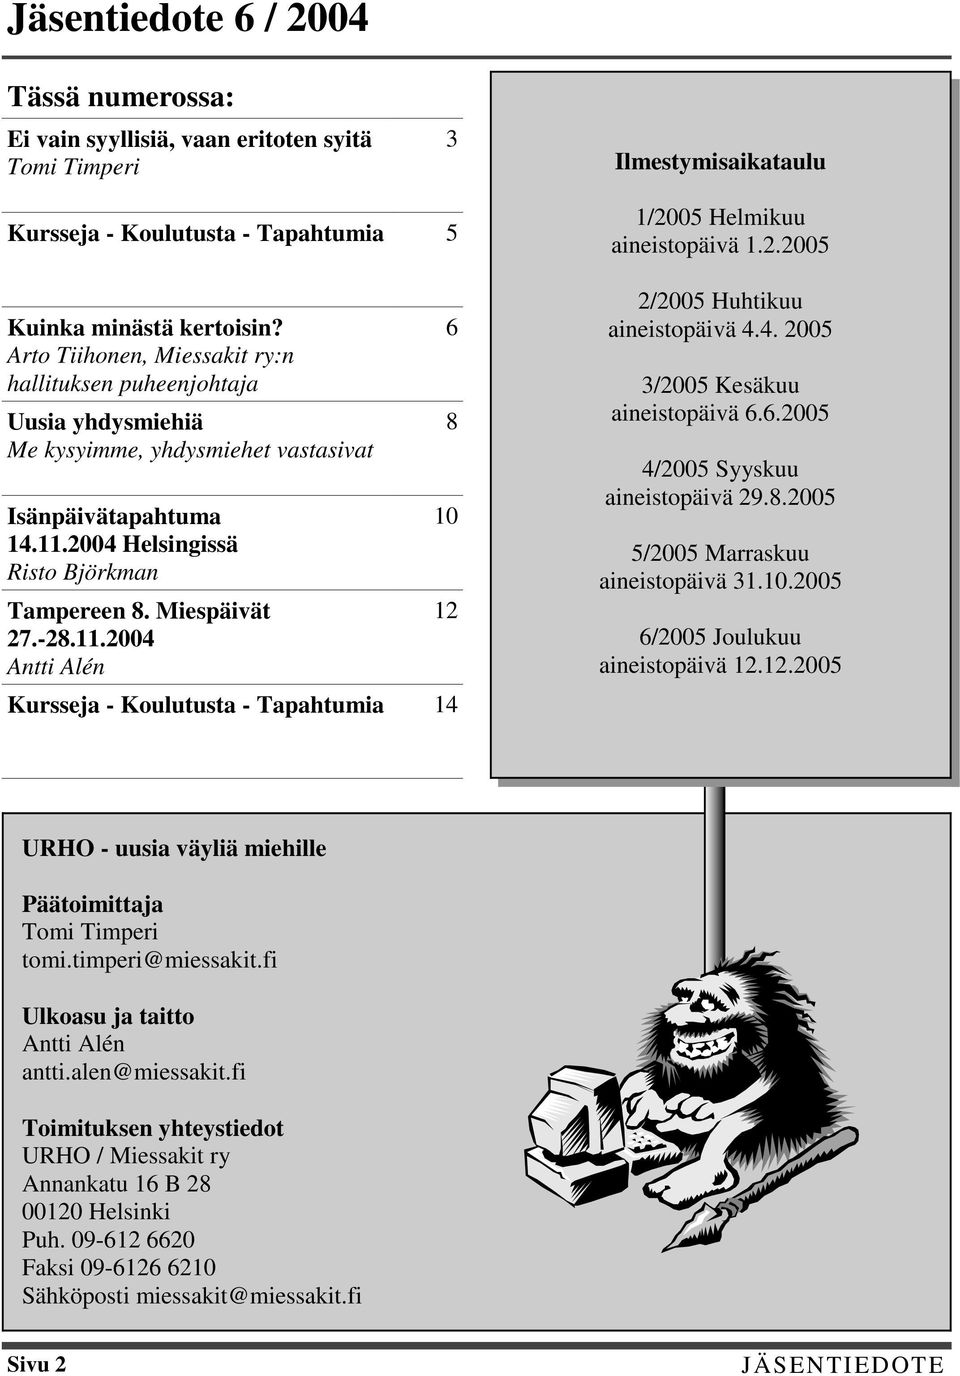 11.2004 Antti Alén 6 8 10 12 Kursseja - Koulutusta - Tapahtumia 14 1/2005 Helmikuu aineistopäivä 1.2.2005 2/2005 Huhtikuu aineistopäivä 4.4. 2005 3/2005 Kesäkuu aineistopäivä 6.6.2005 4/2005 Syyskuu aineistopäivä 29.